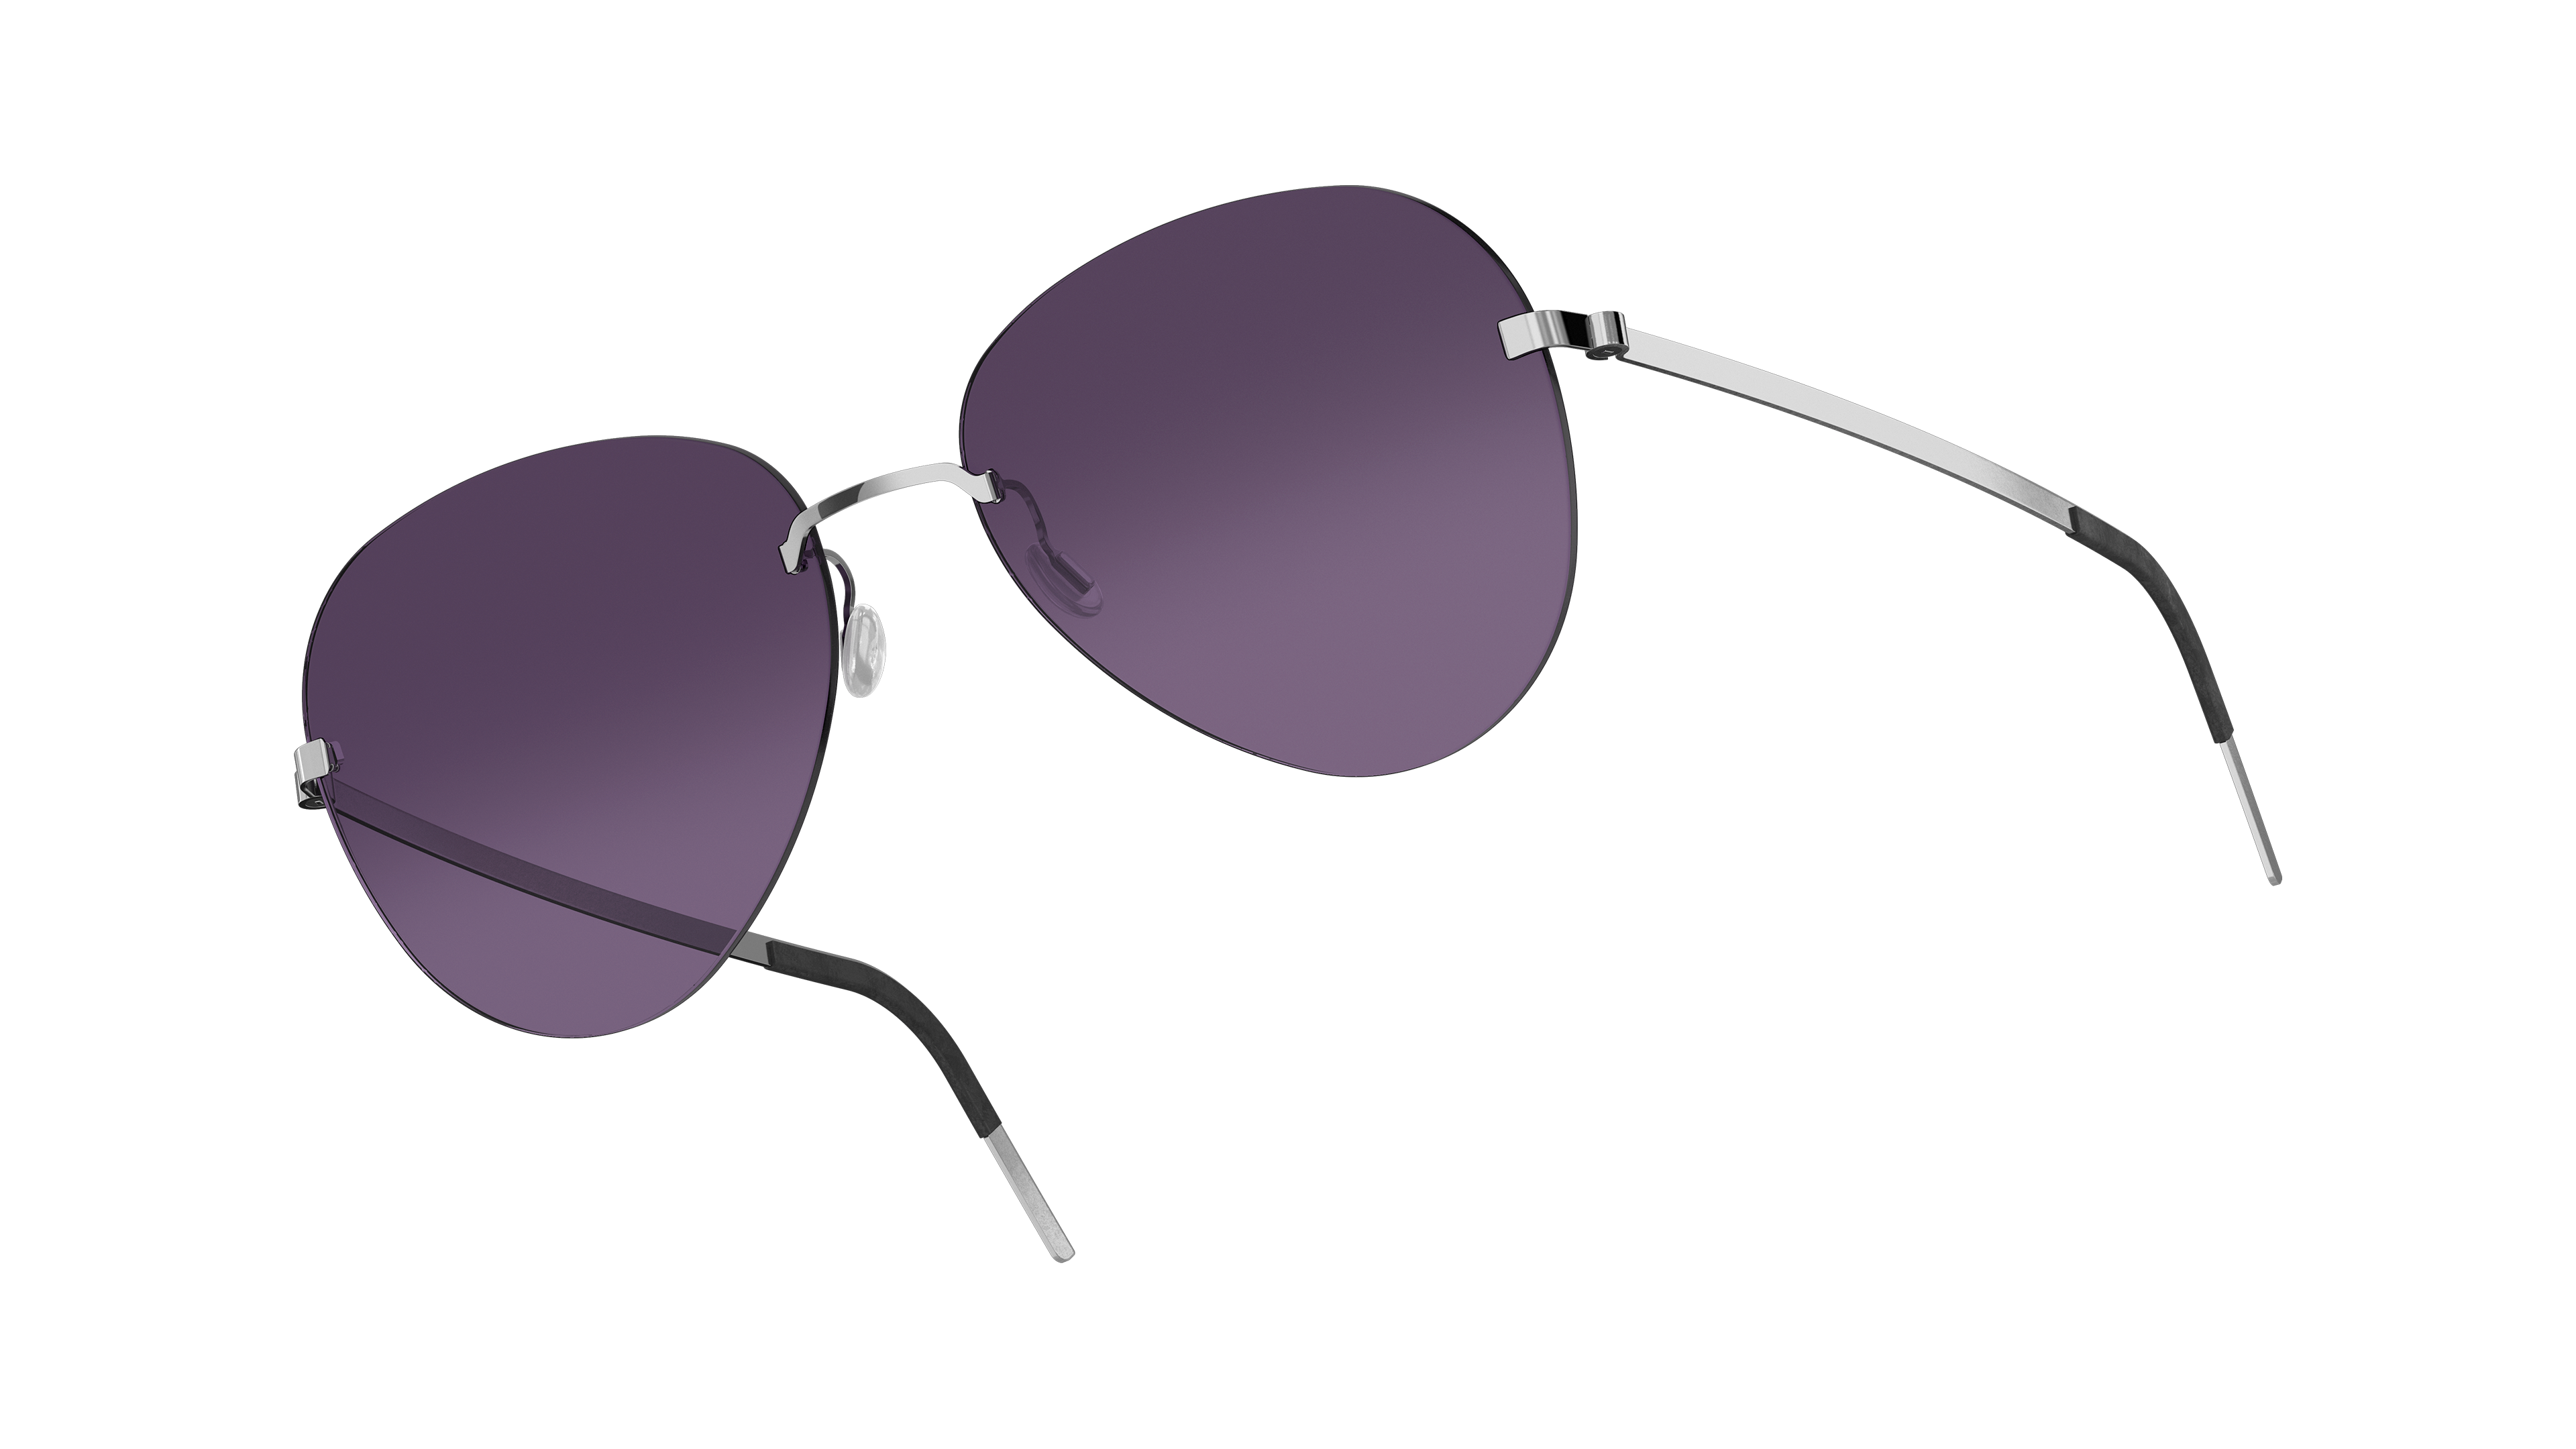 LINDBERG strip3p titanium model 2408 tinted designer aviator sunglasses in silver colour p10